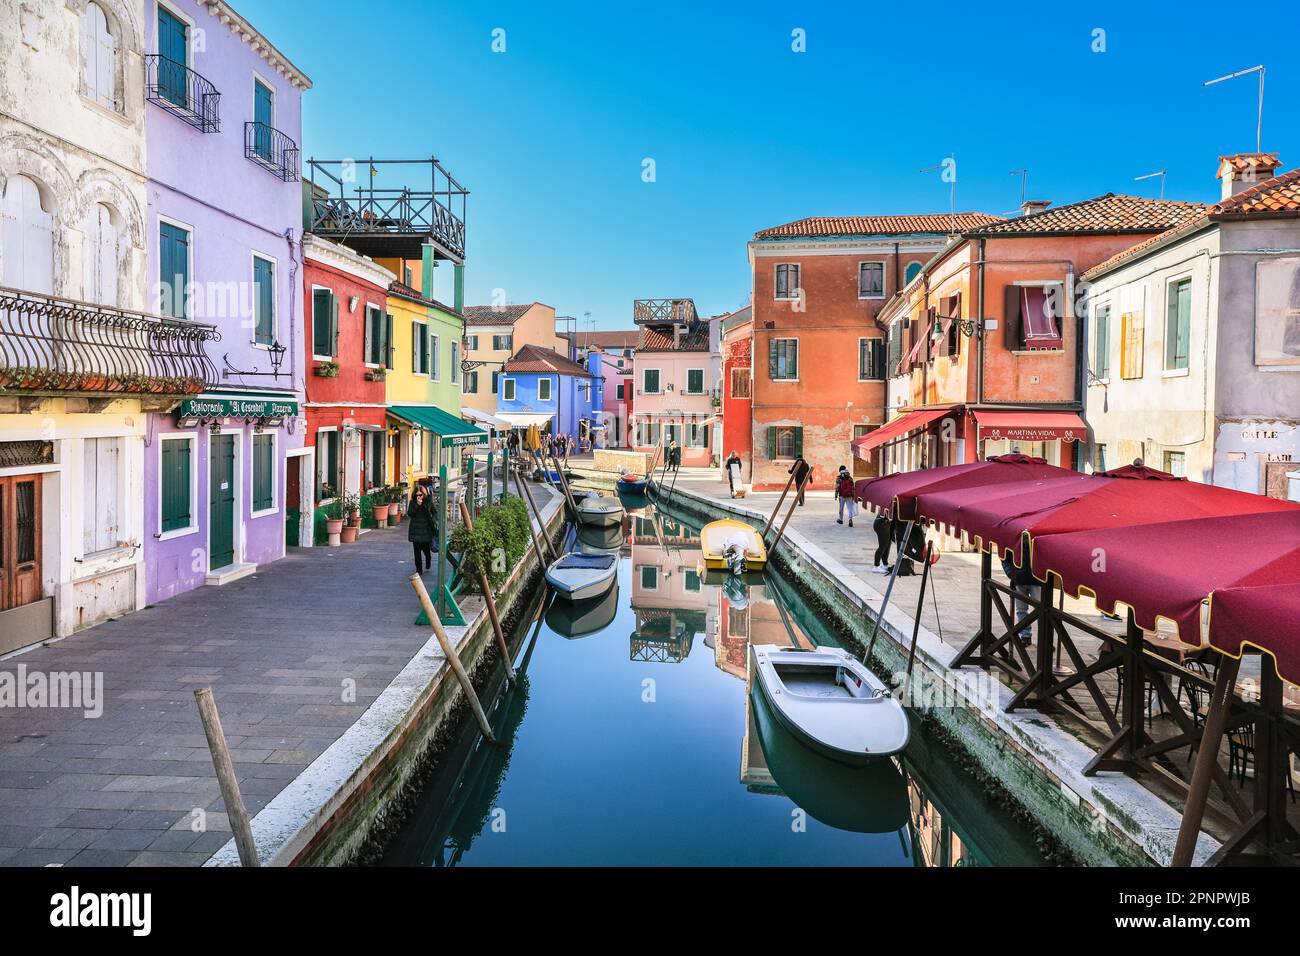 Insel Burano, farbenfrohe Häuser und Geschäfte am Kanal, Burano, Venedig, Italien Stockfoto